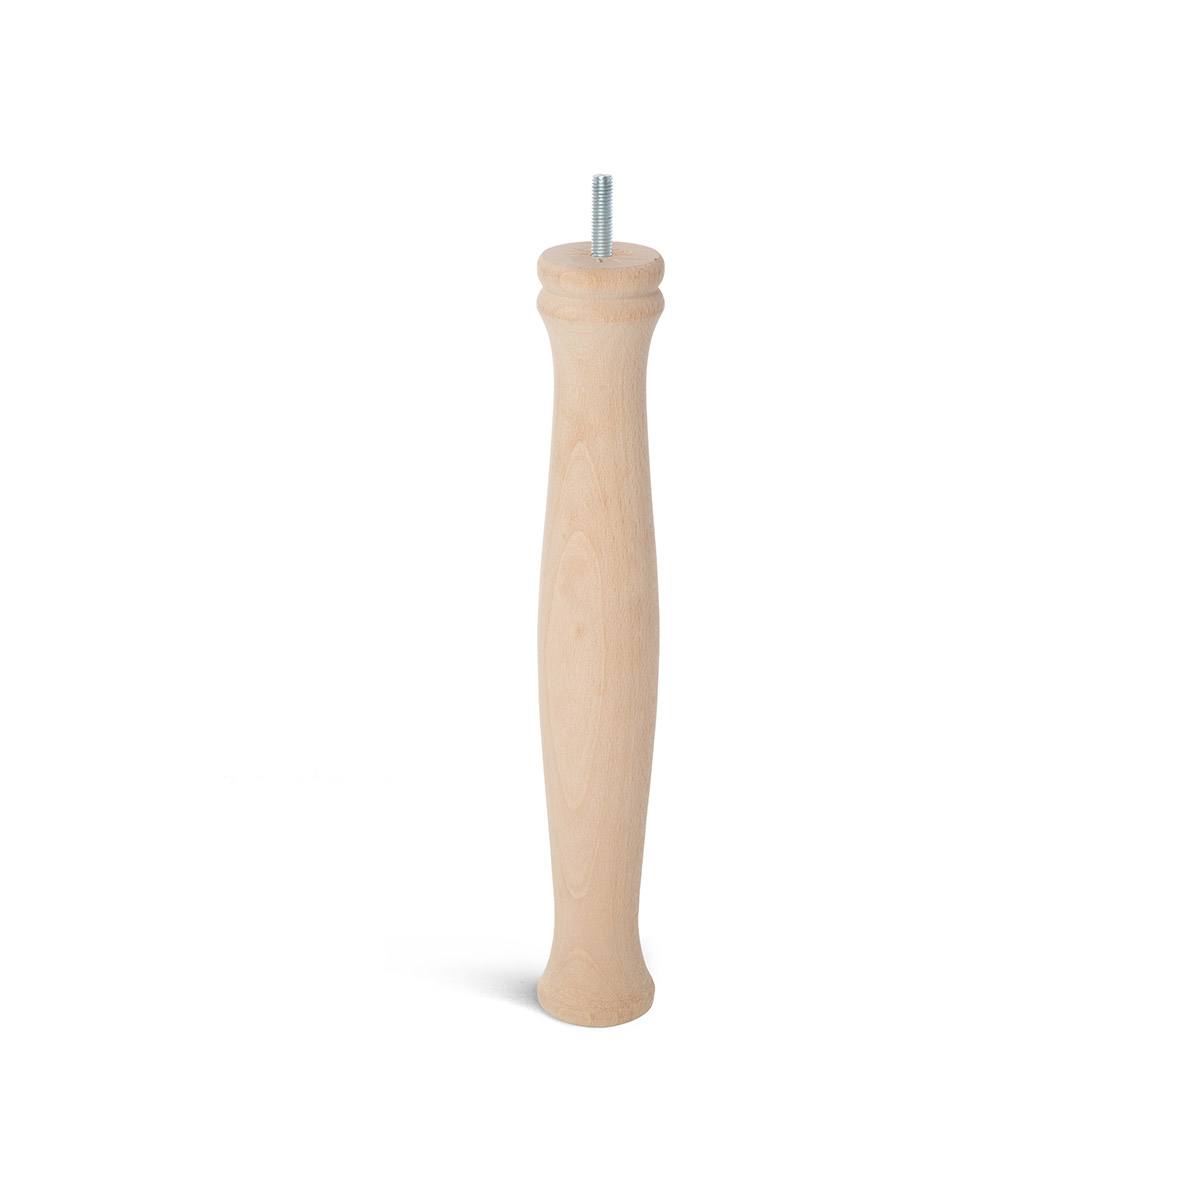 Pied cylindrique en bois d'une hauteur de 360 mm et finition hêtre brut. Dimensions: 55x55x360 mm